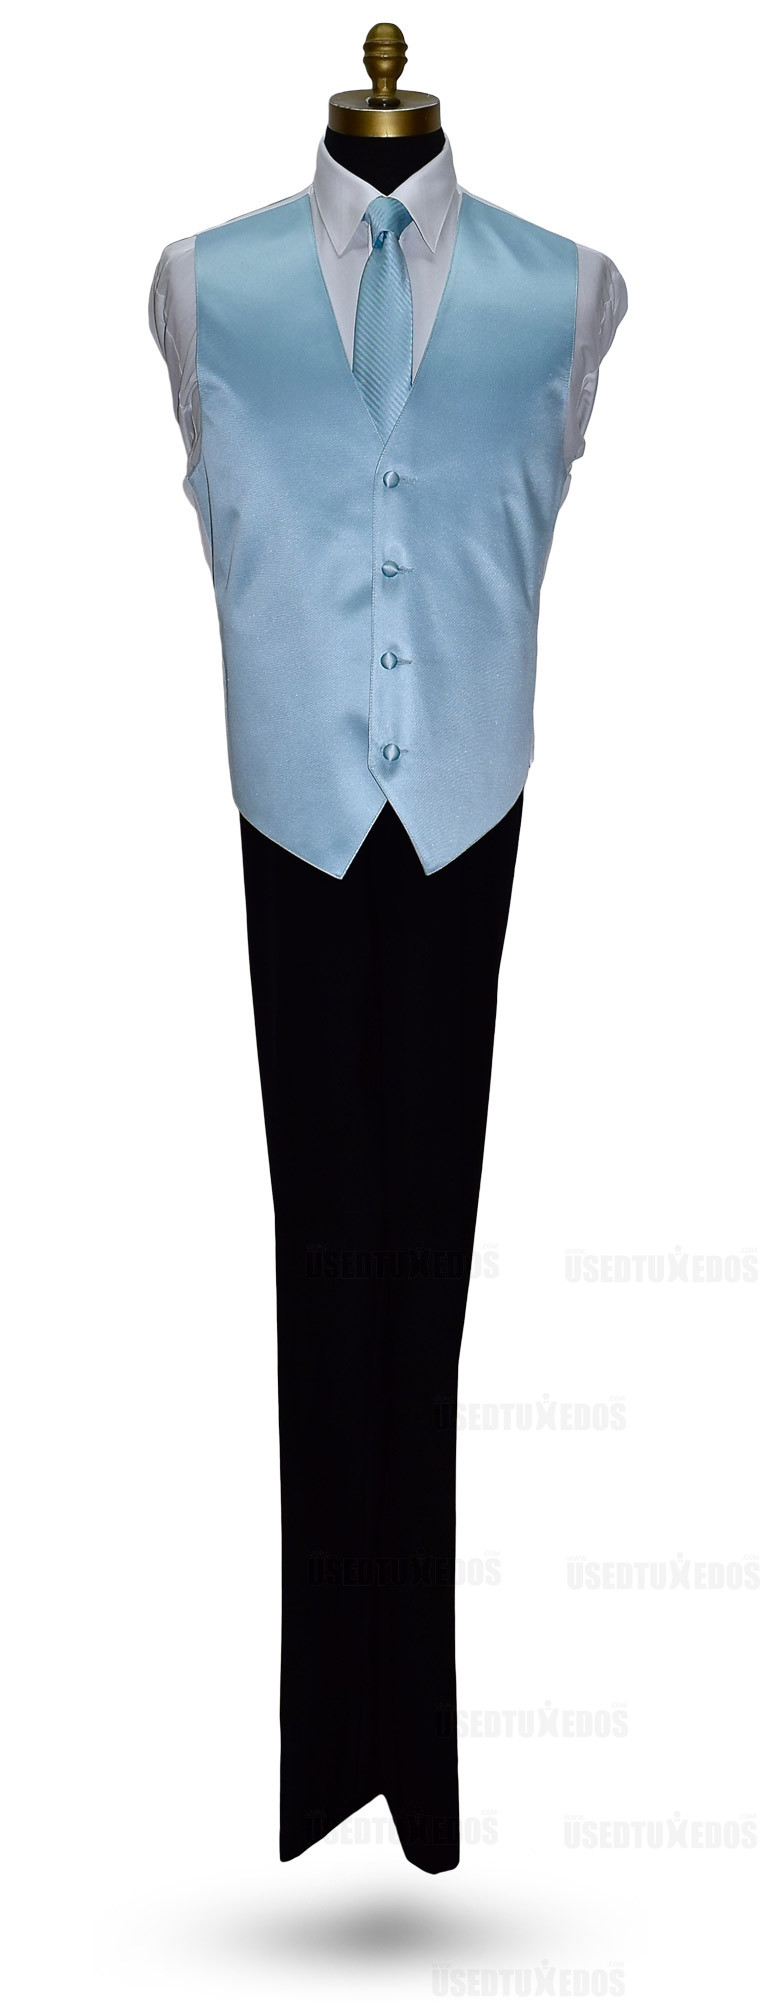 men's capri blue striped dress tie with capri-blue vest by San Miguel Formals